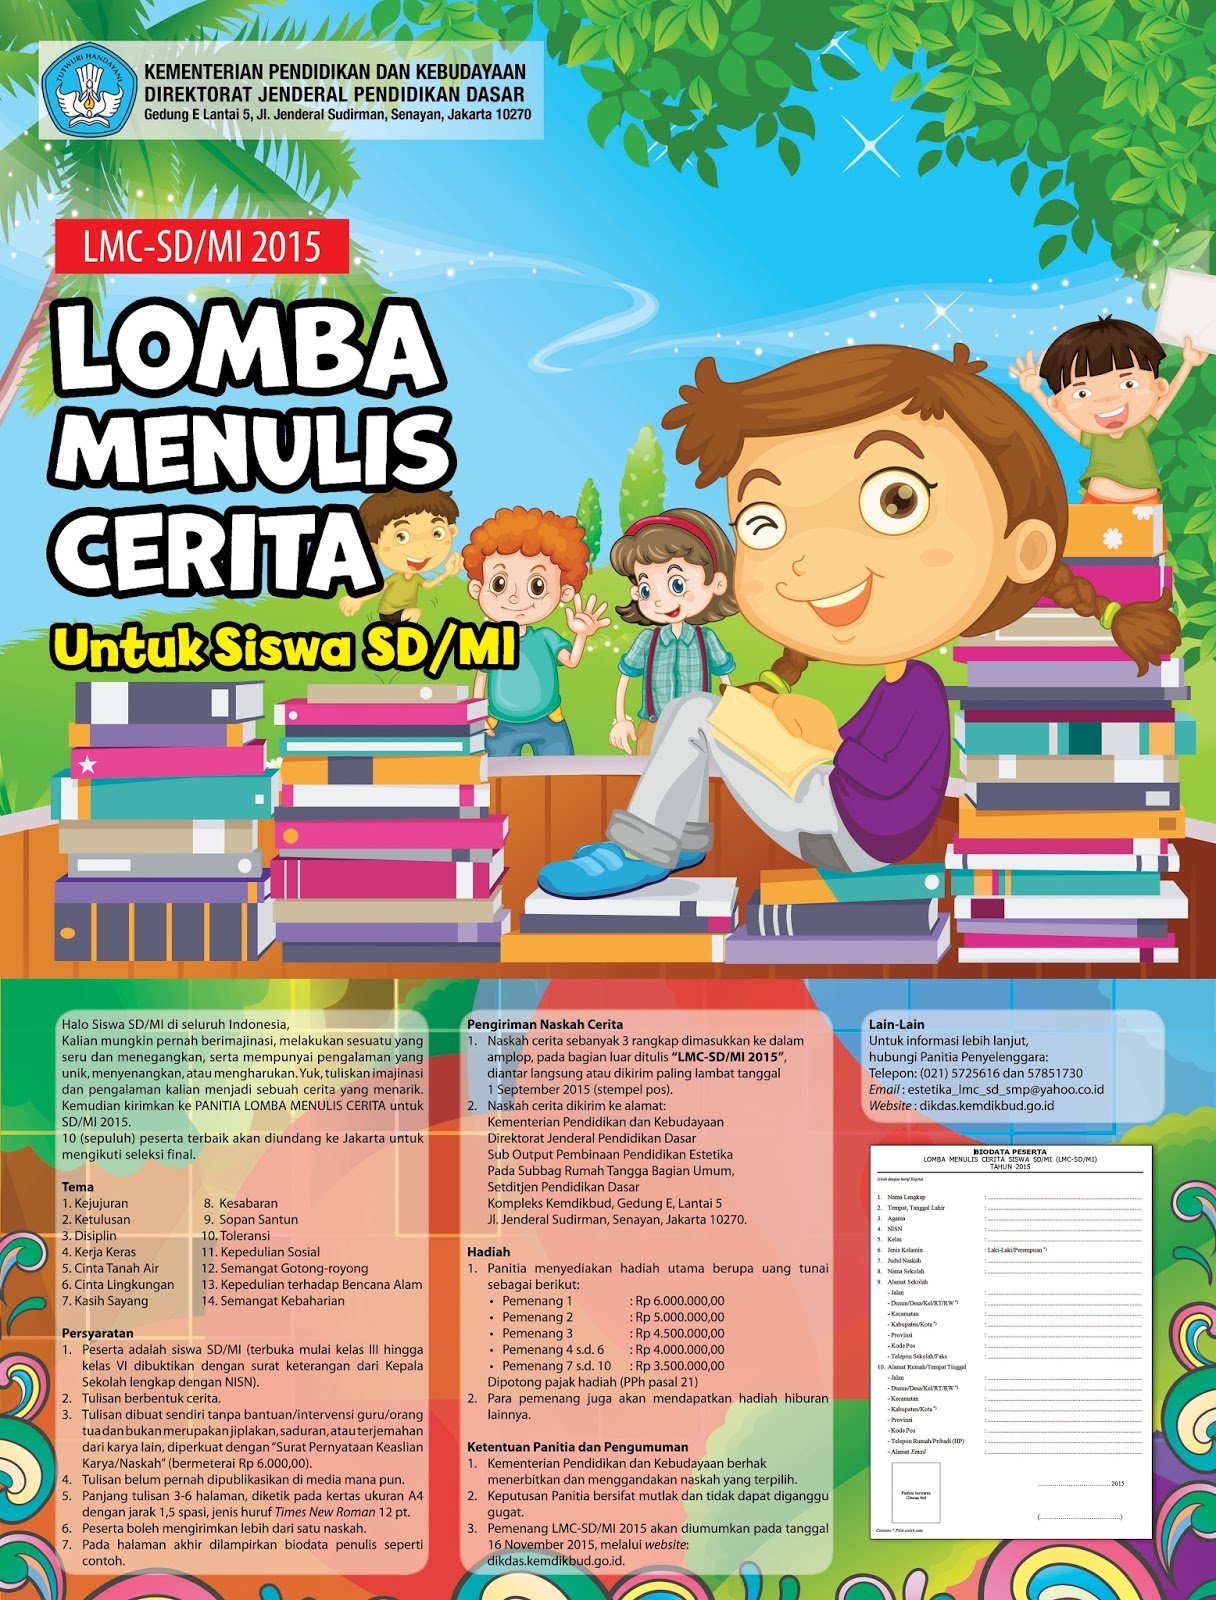 Operator Sekolah Kota Bogor: Ikut Lomba Menulis Cerita 2015, Yuk!